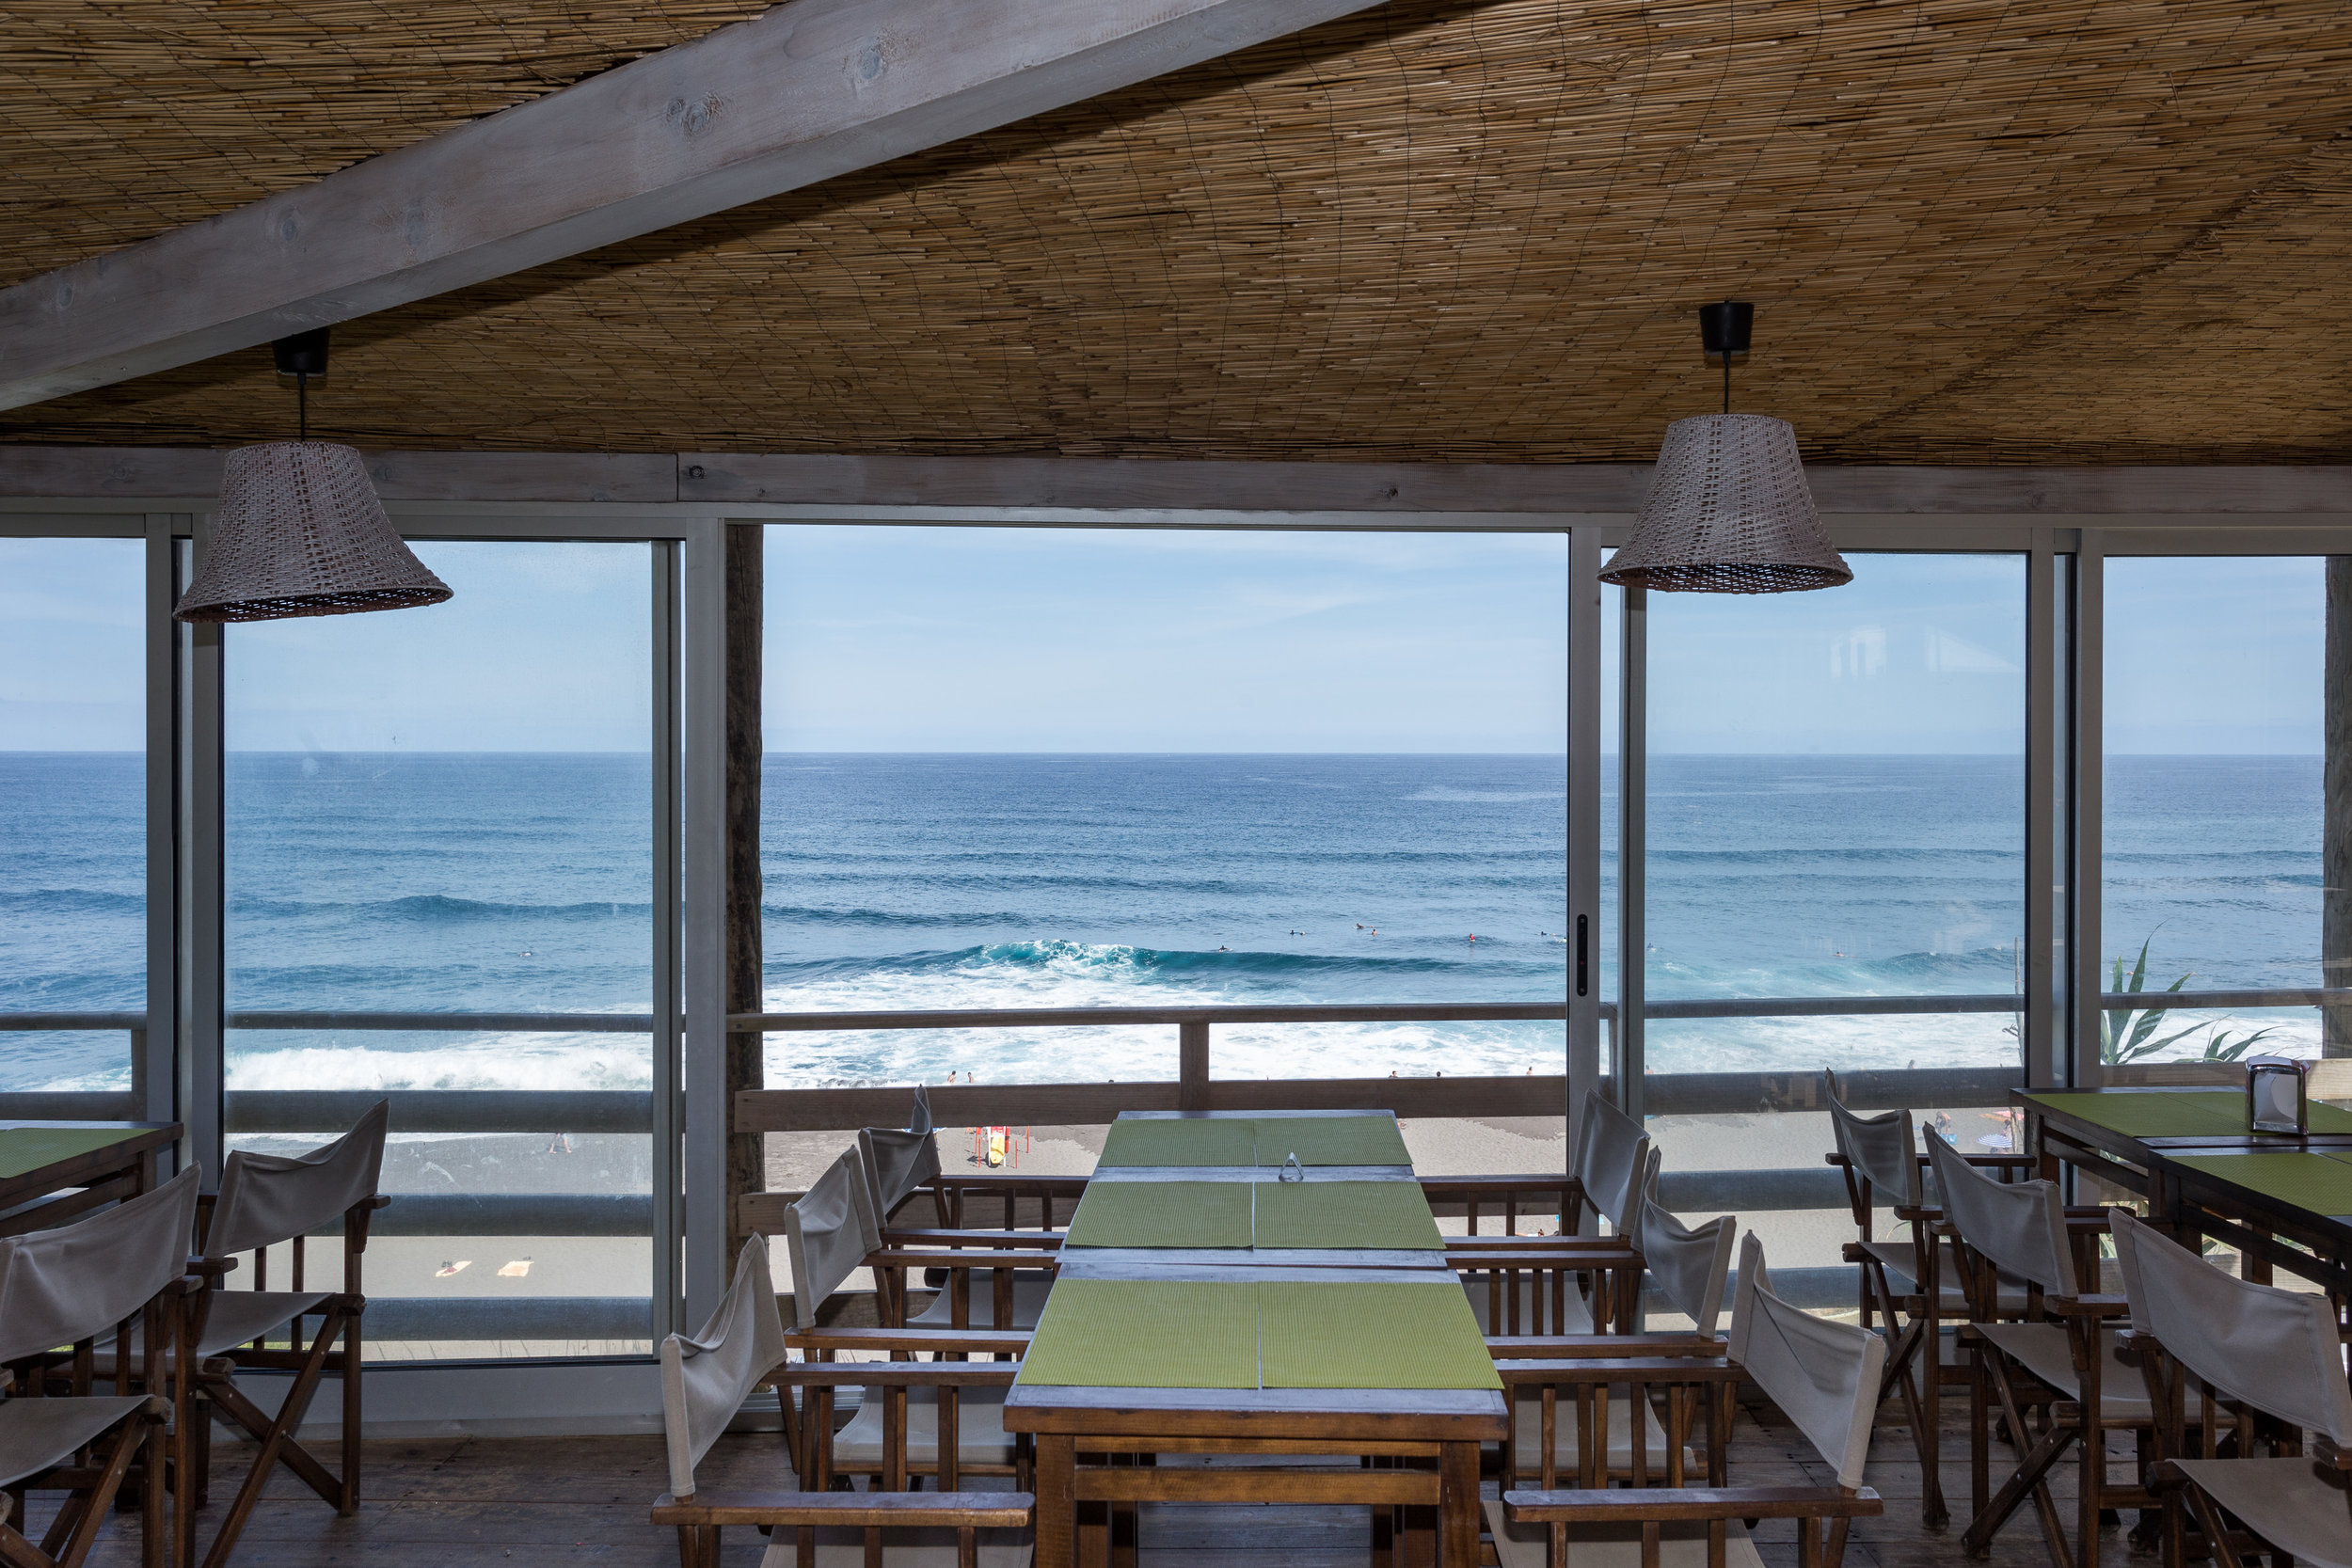 Azores Hotels | Santa Barbara Eco Beach Resort Sao Miguel